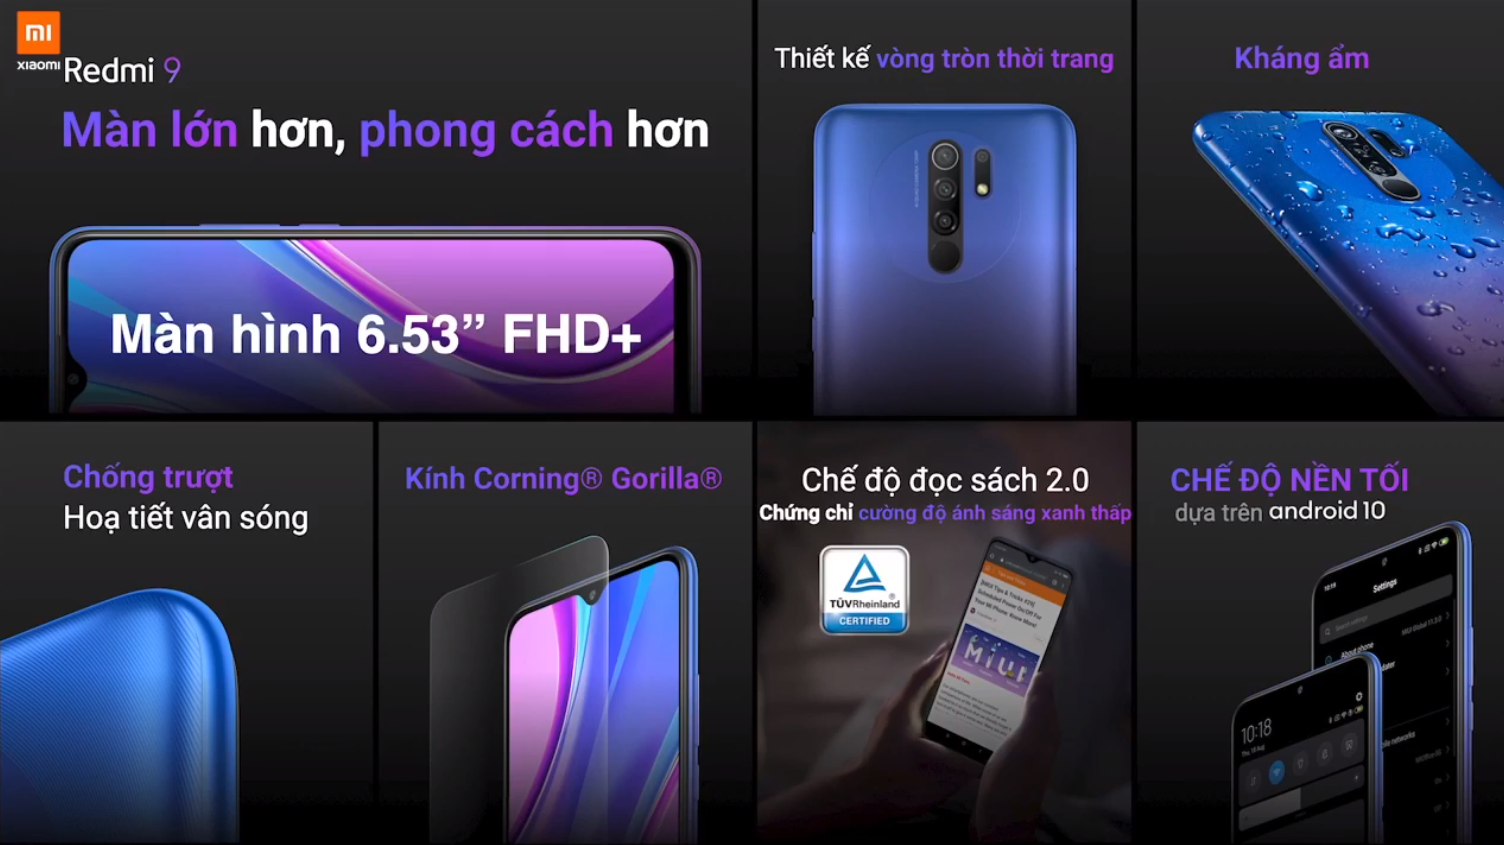 Sforum - Trang thông tin công nghệ mới nhất Xiaomi-redmi-9-3 Redmi 9 ra mắt tại VN: Smartphone phong cách nhất, màn hình lớn nhất, nhiều công nghệ nhất và giá "trung thực" nhất phân khúc 